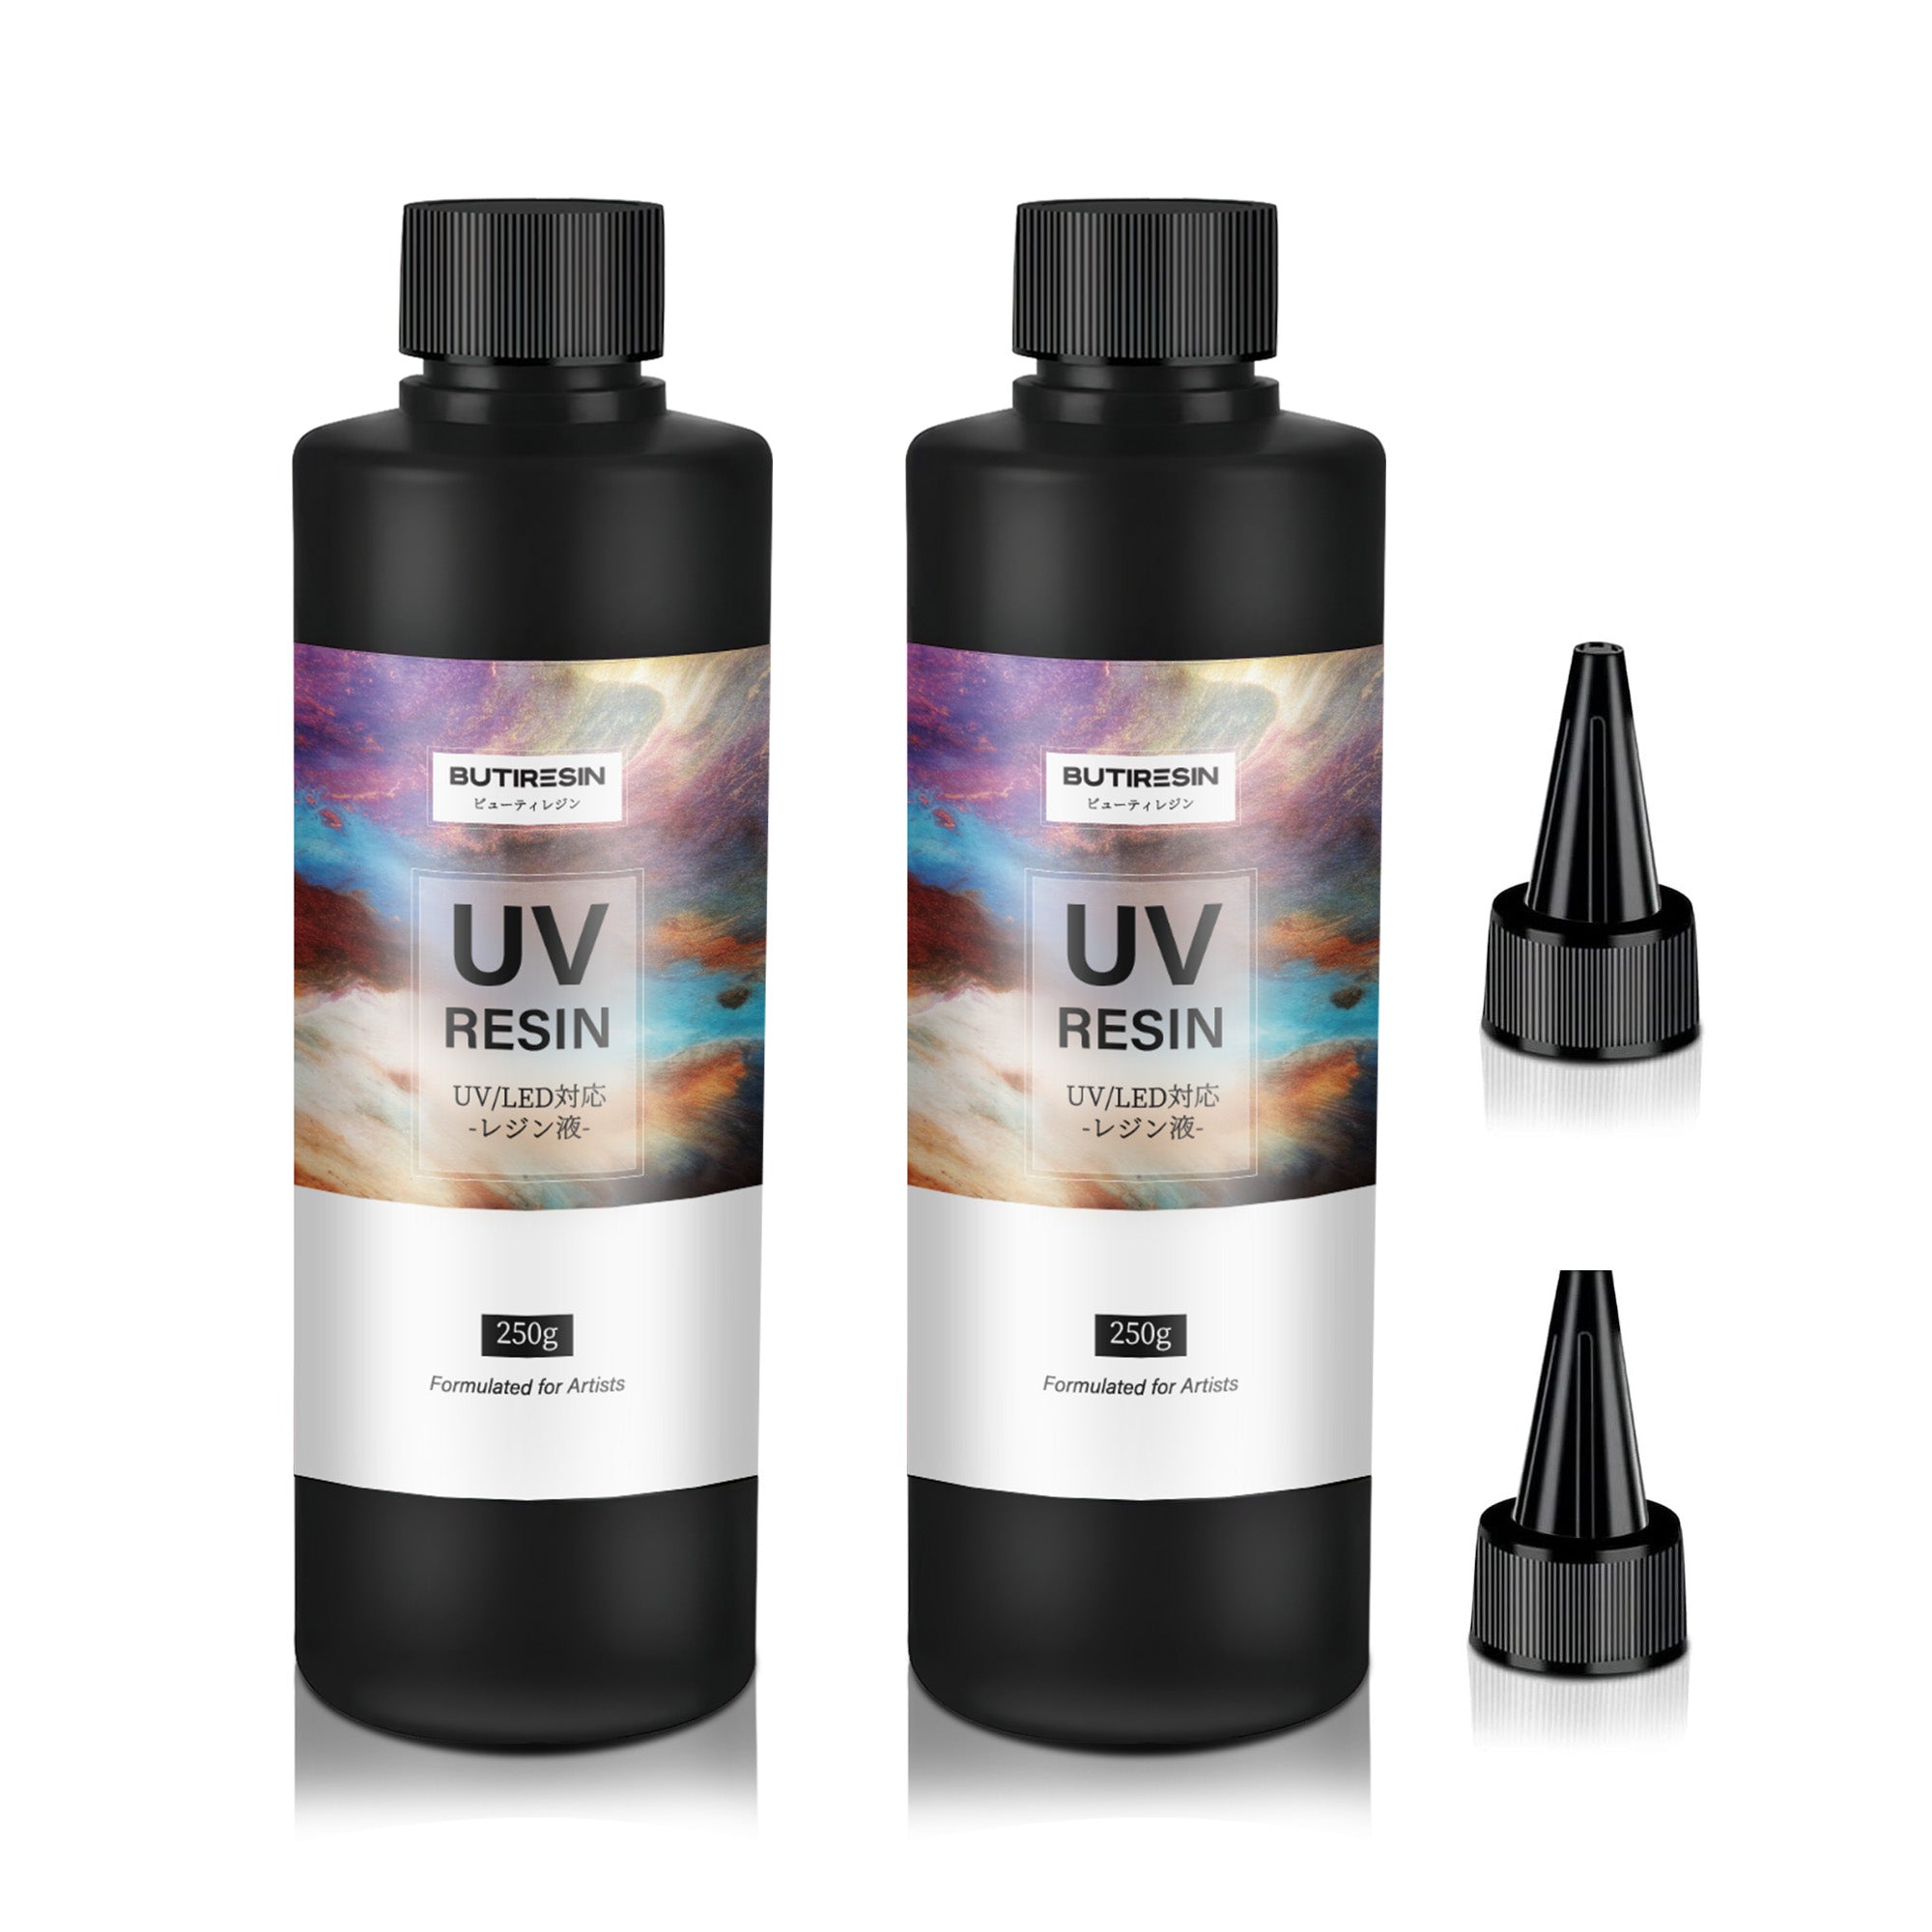 高品質 UVレジン LEDレジン 500ｇ×2本 透明 ハード クラフトレジン液